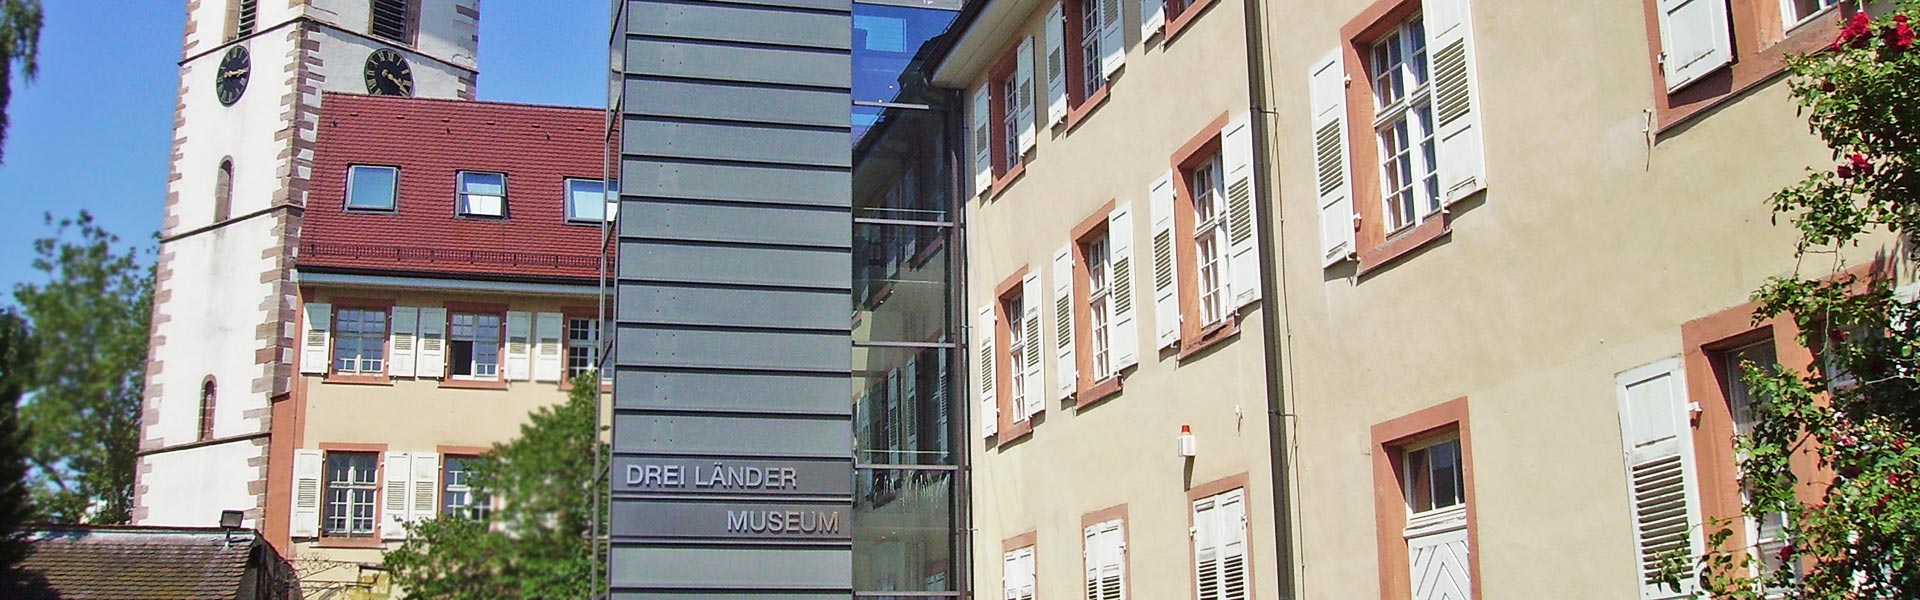 Lörrach & die Regio - lebenswertes Lörrach - Dreiländermuseum